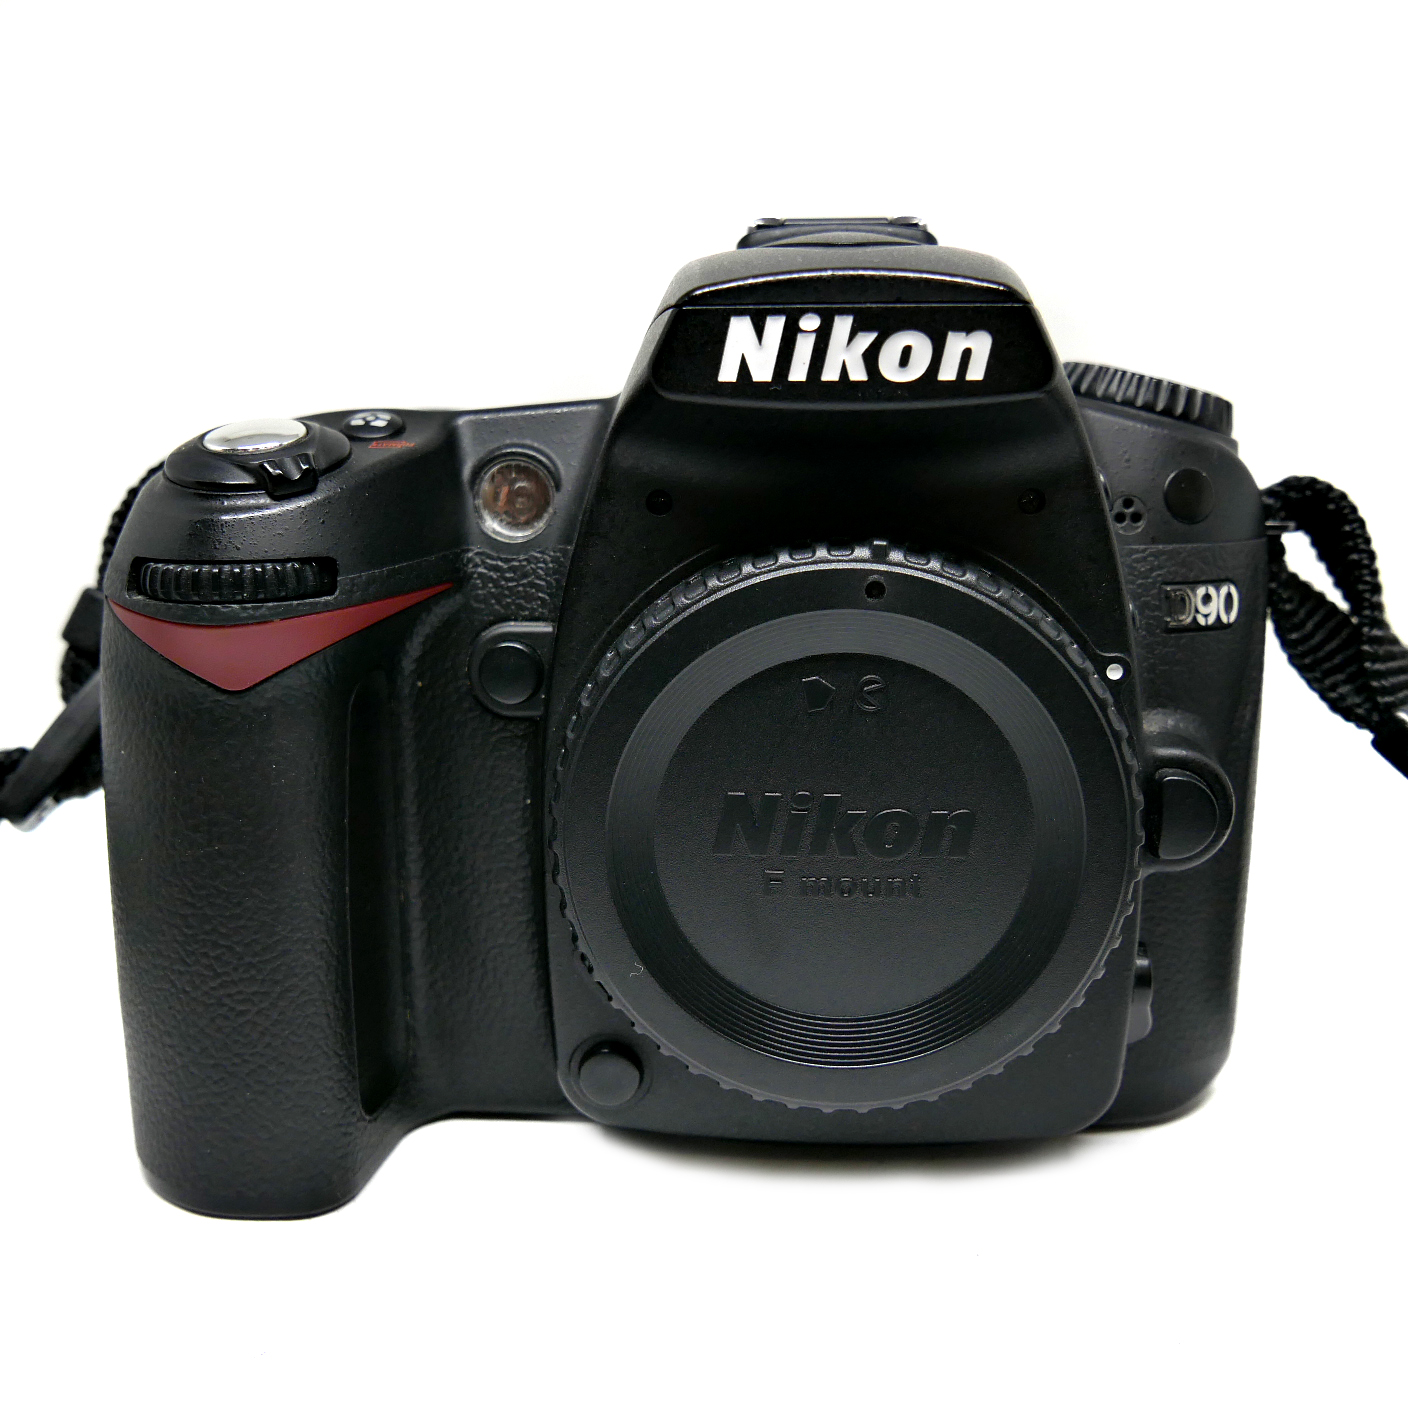 (Myyty) Nikon D90 (SC:34220) (käytetty)